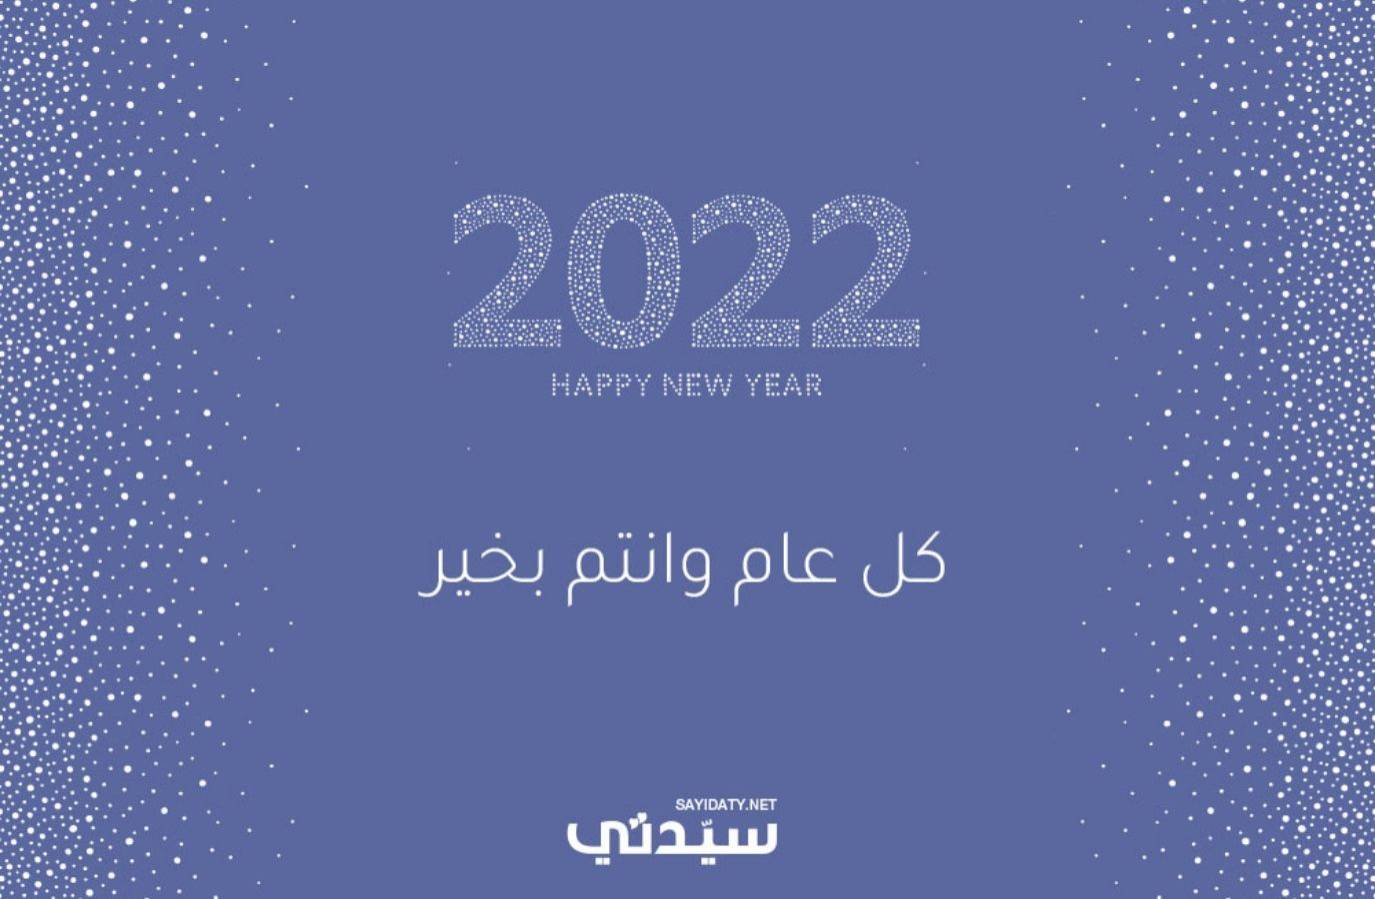 رسائل ومسجات العام الجديد 2022